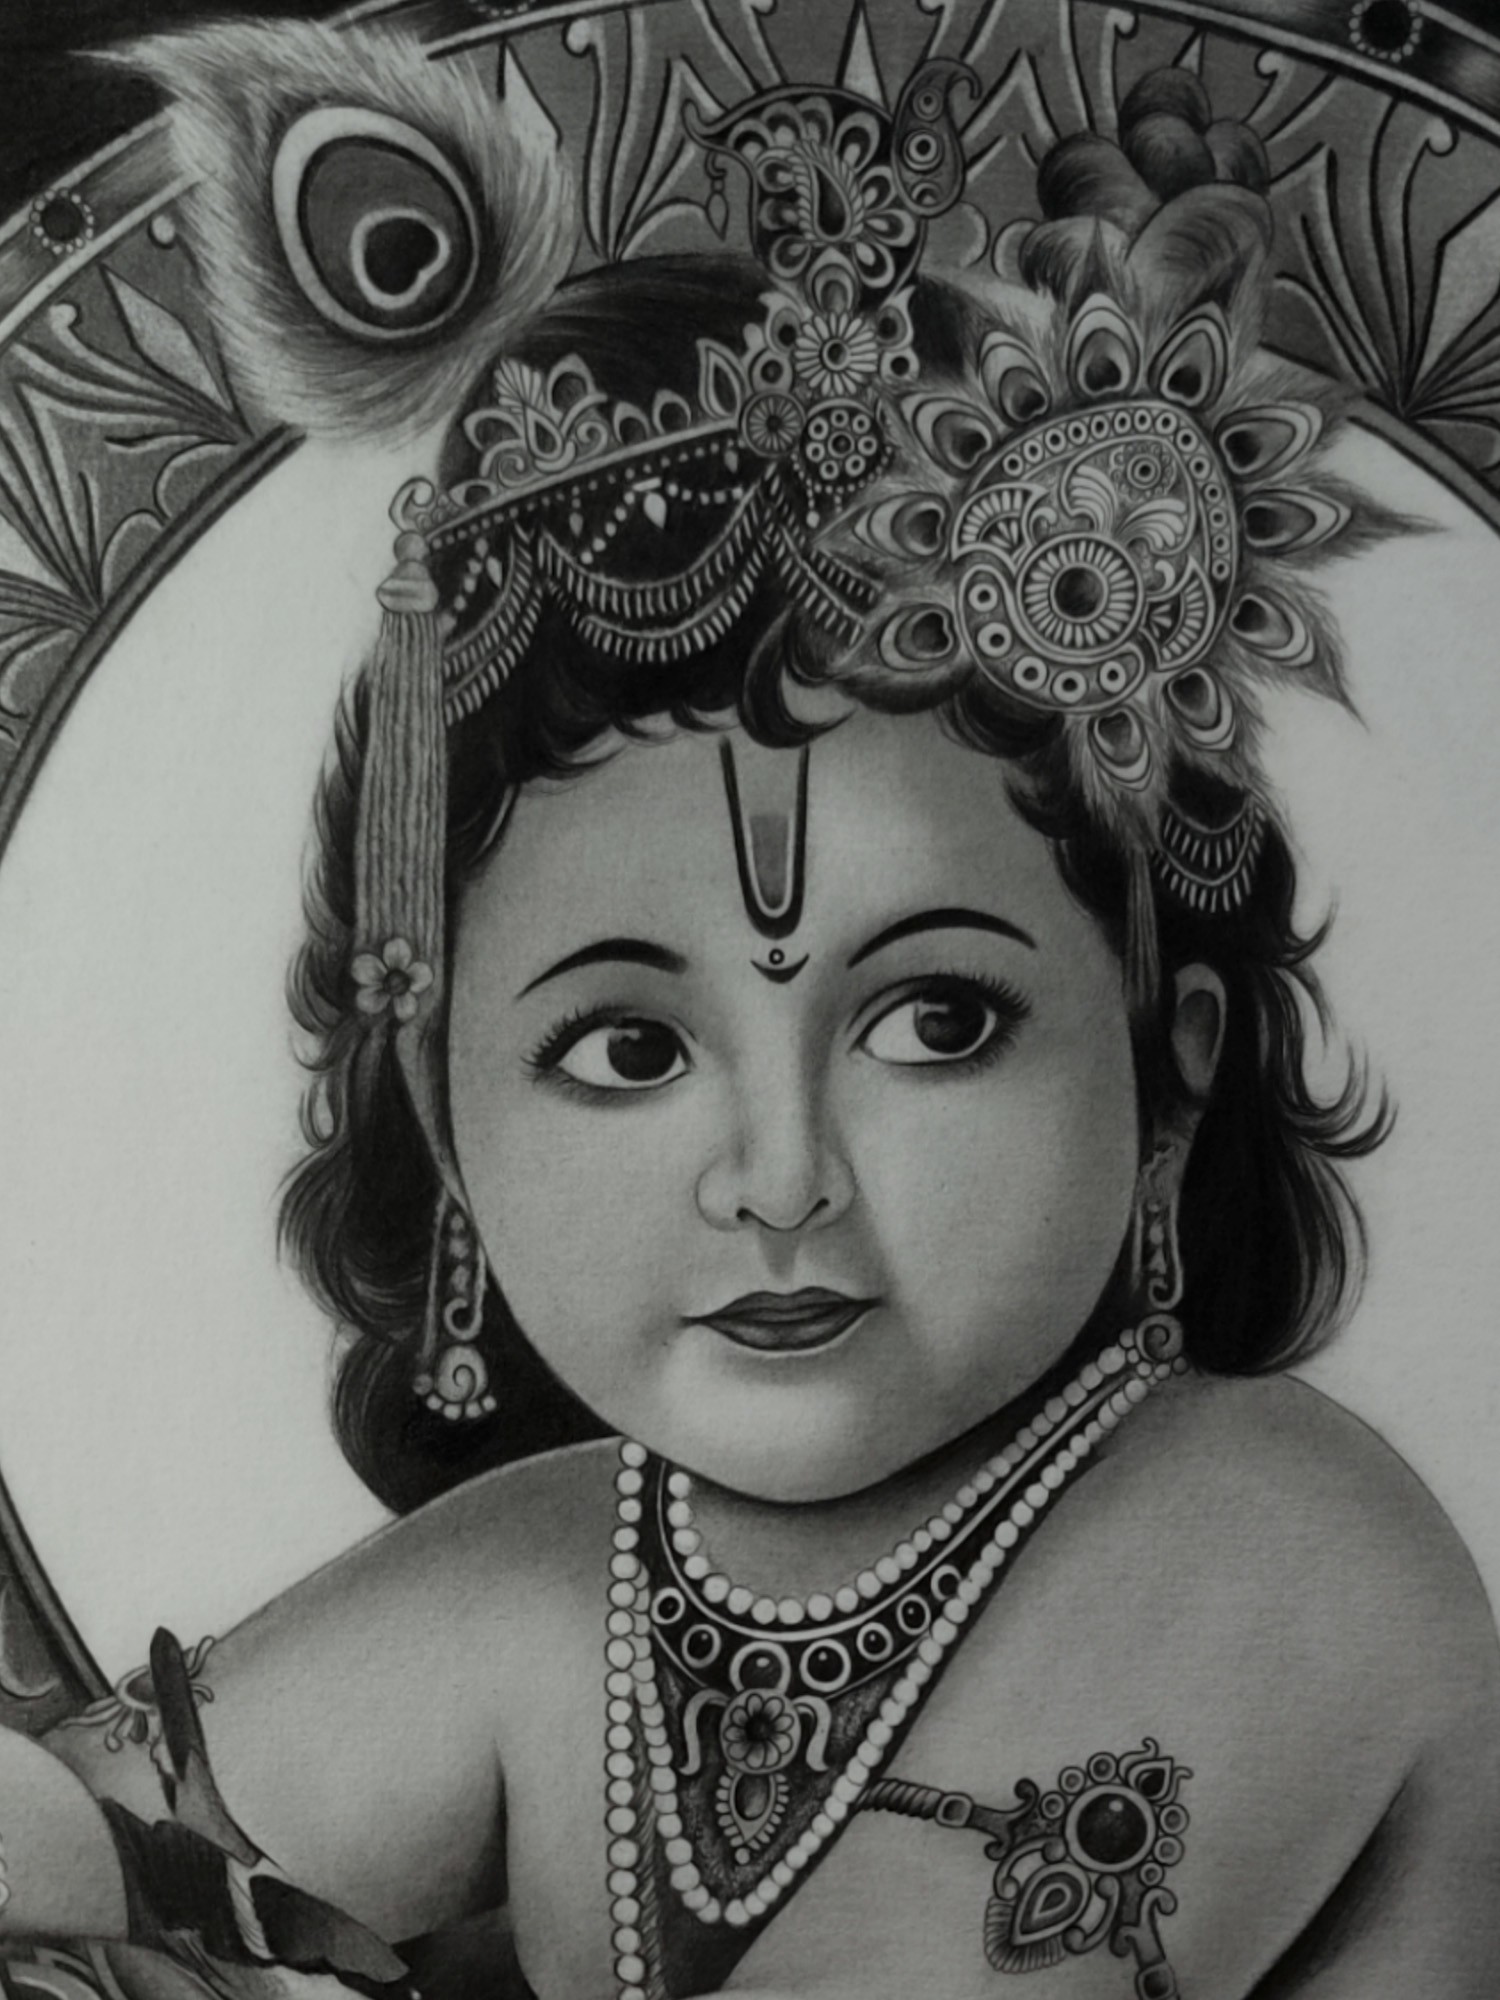 Jai Shri krishna Art Print by Lalitesh Kohli - Pixels